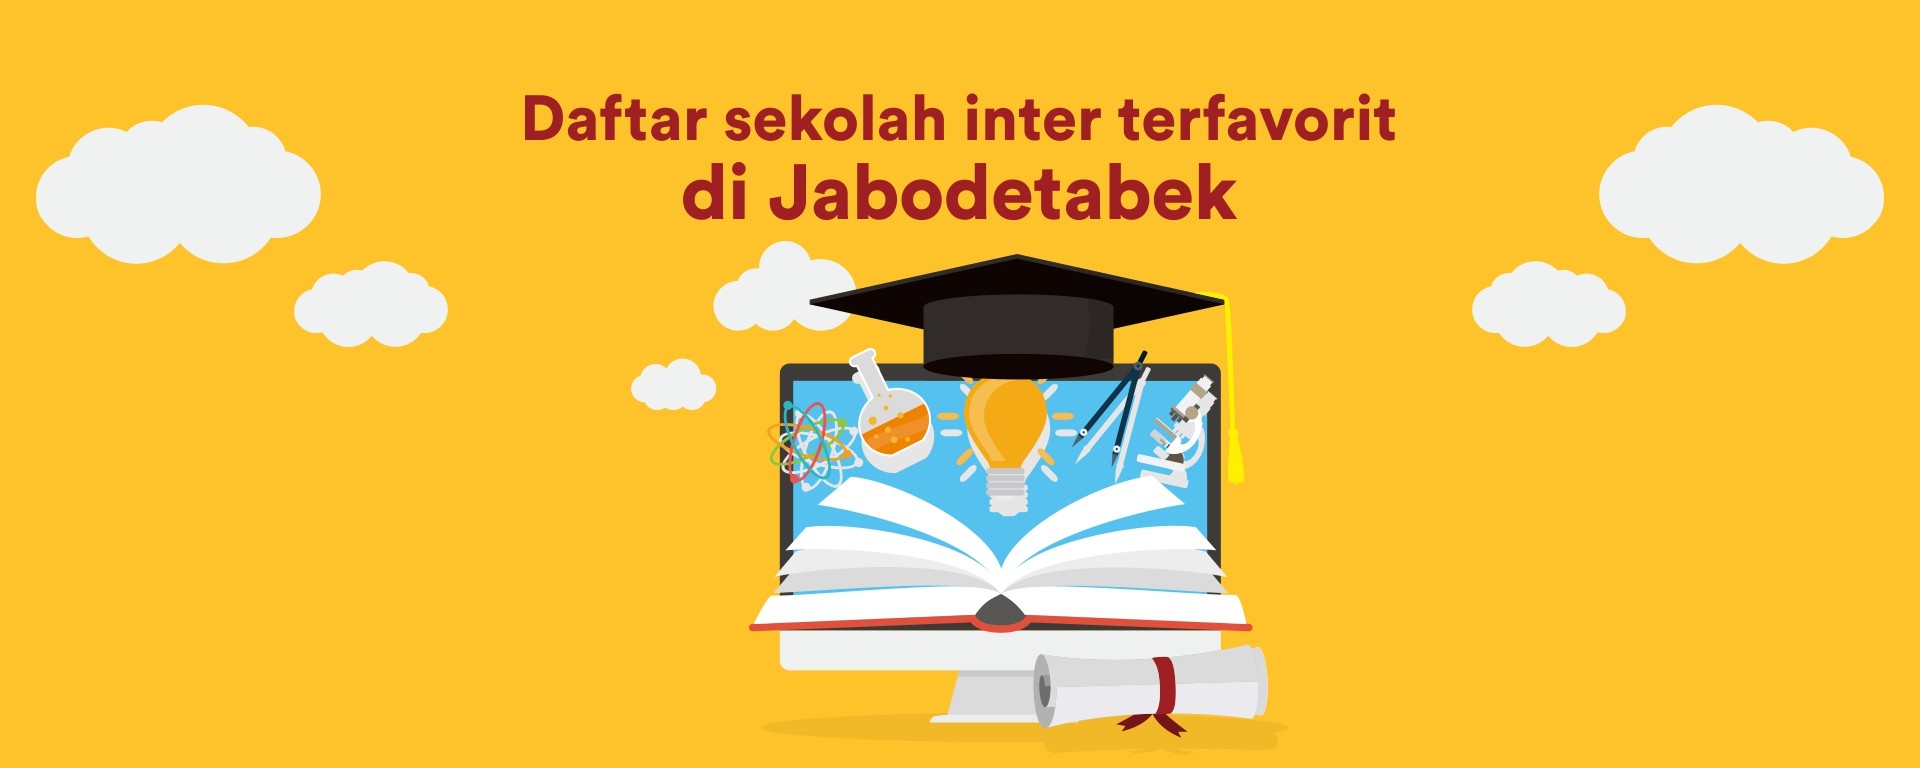 Ini 10 Sekolah Internasional Favorit di Jabodetabek, Apa Saja Keunggulannya?